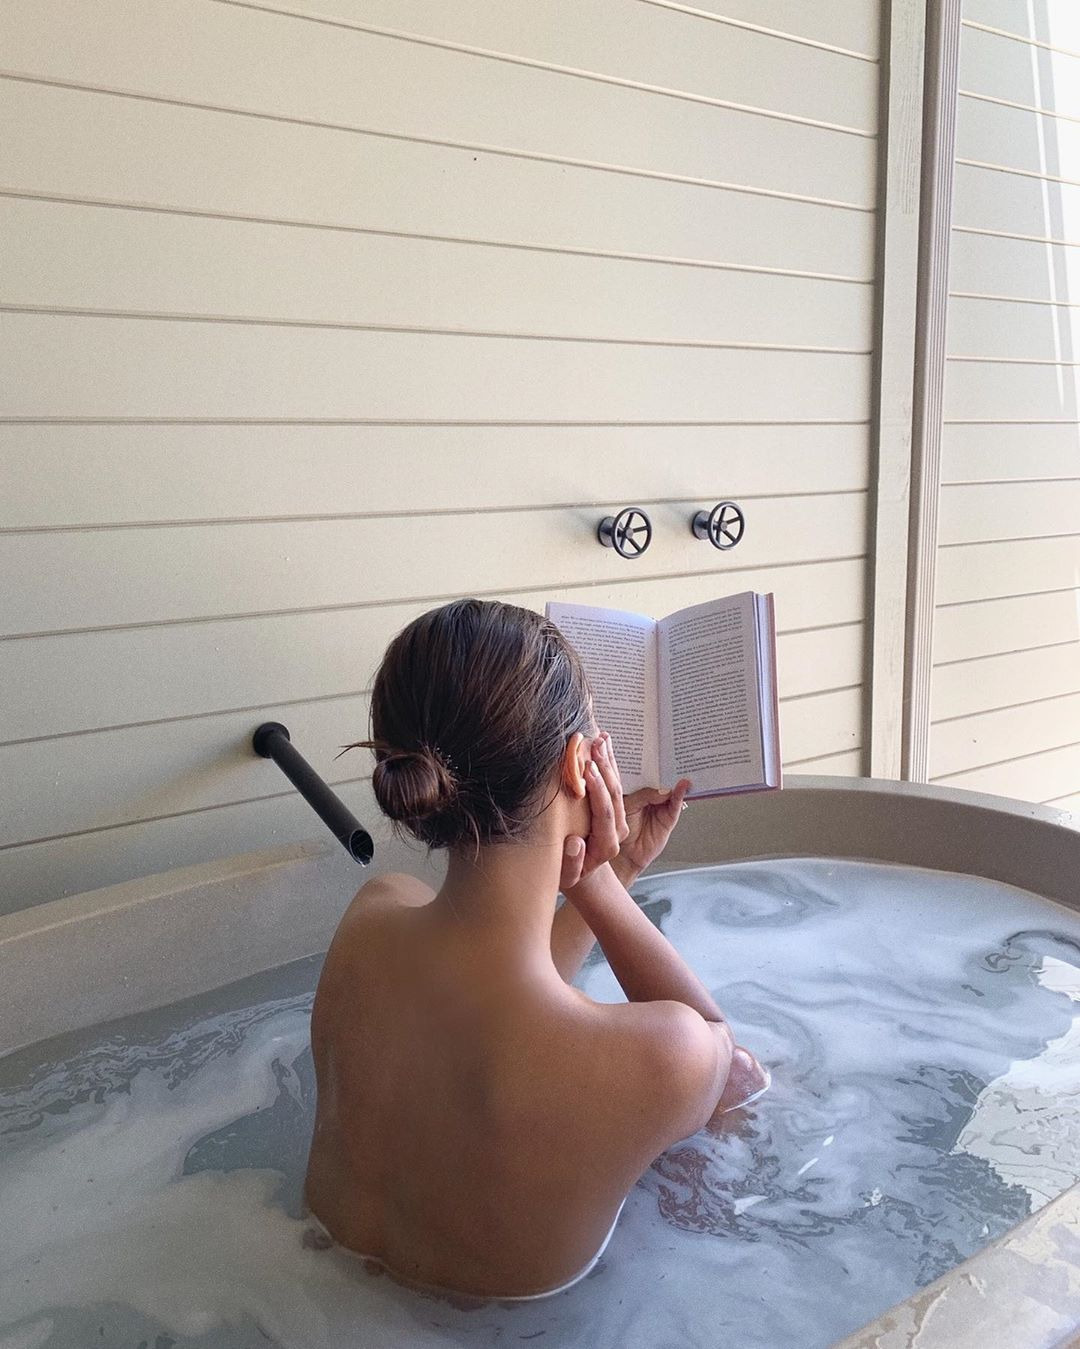 Mari Giudicelli'den Jasmine Tookes'a Haftanın Güzellik Instagramları